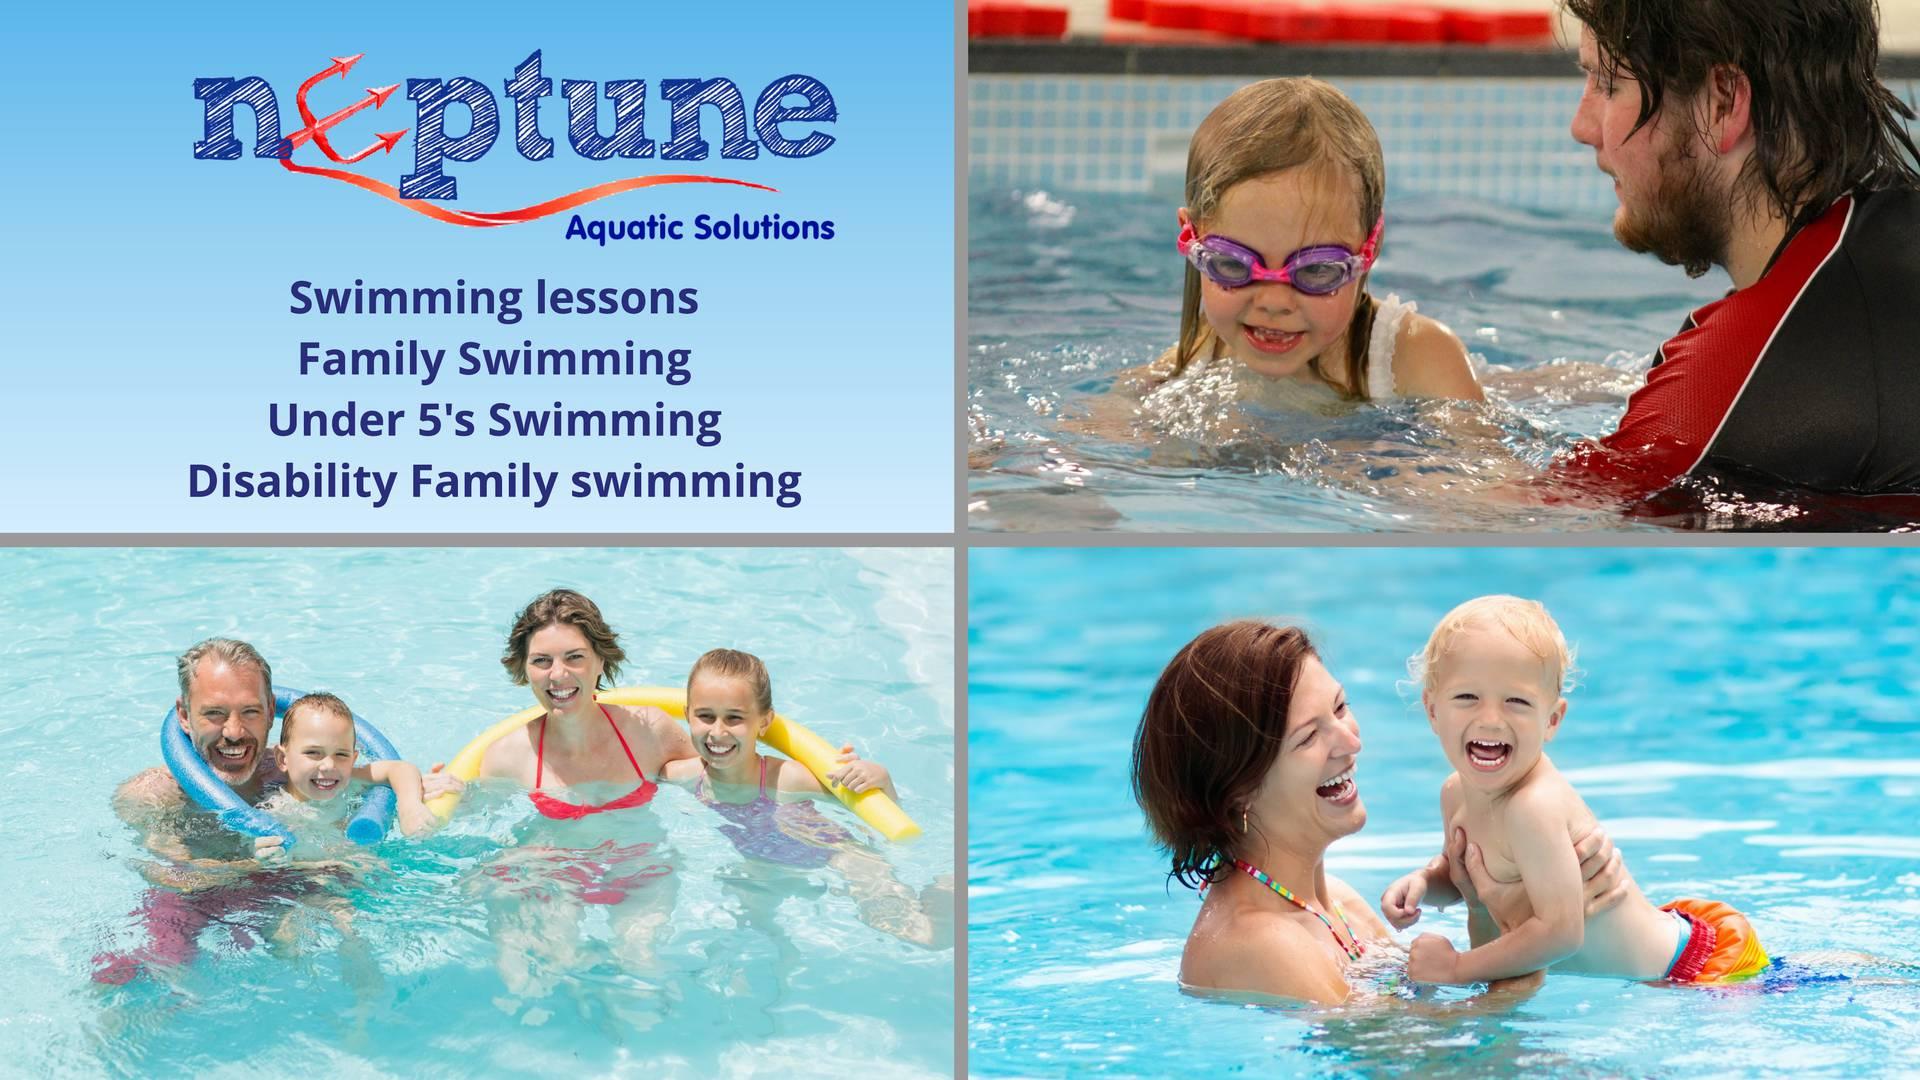 Neptune Aquatic Solutions photo